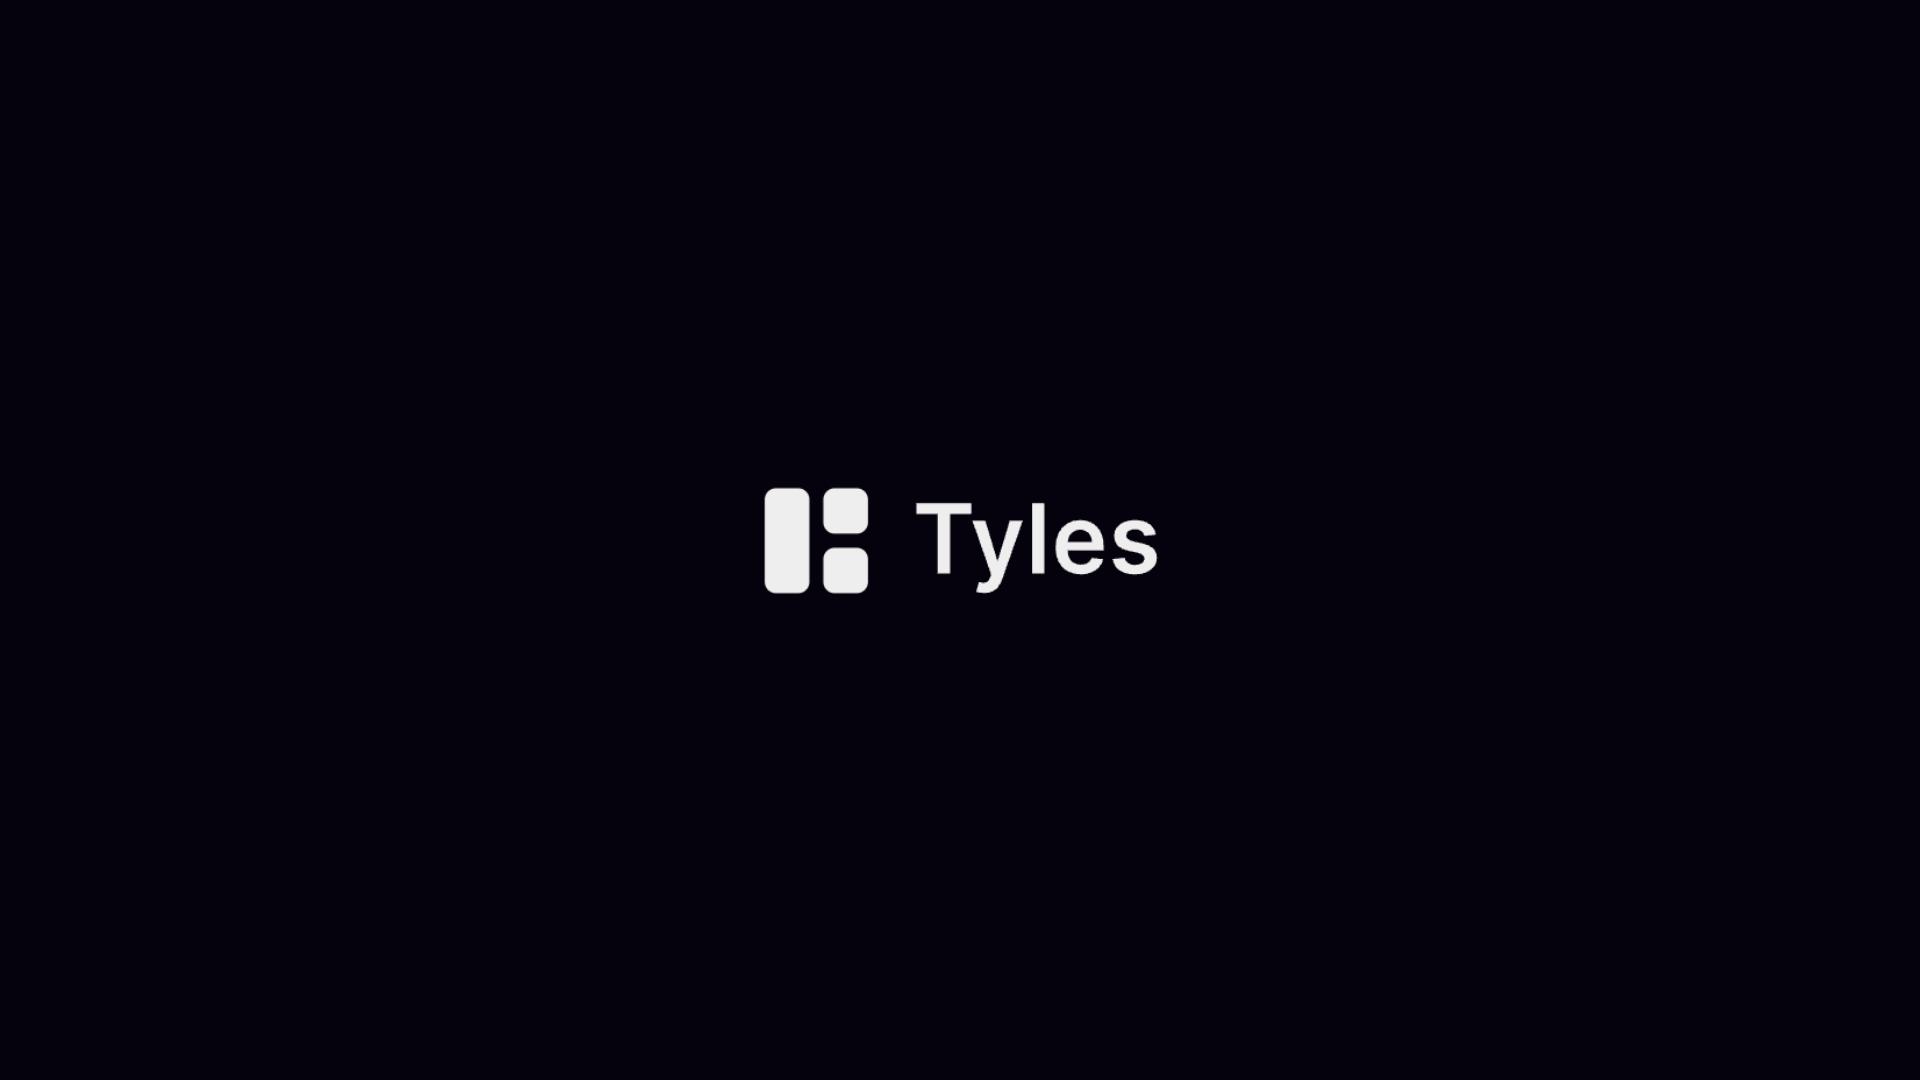 Tyles